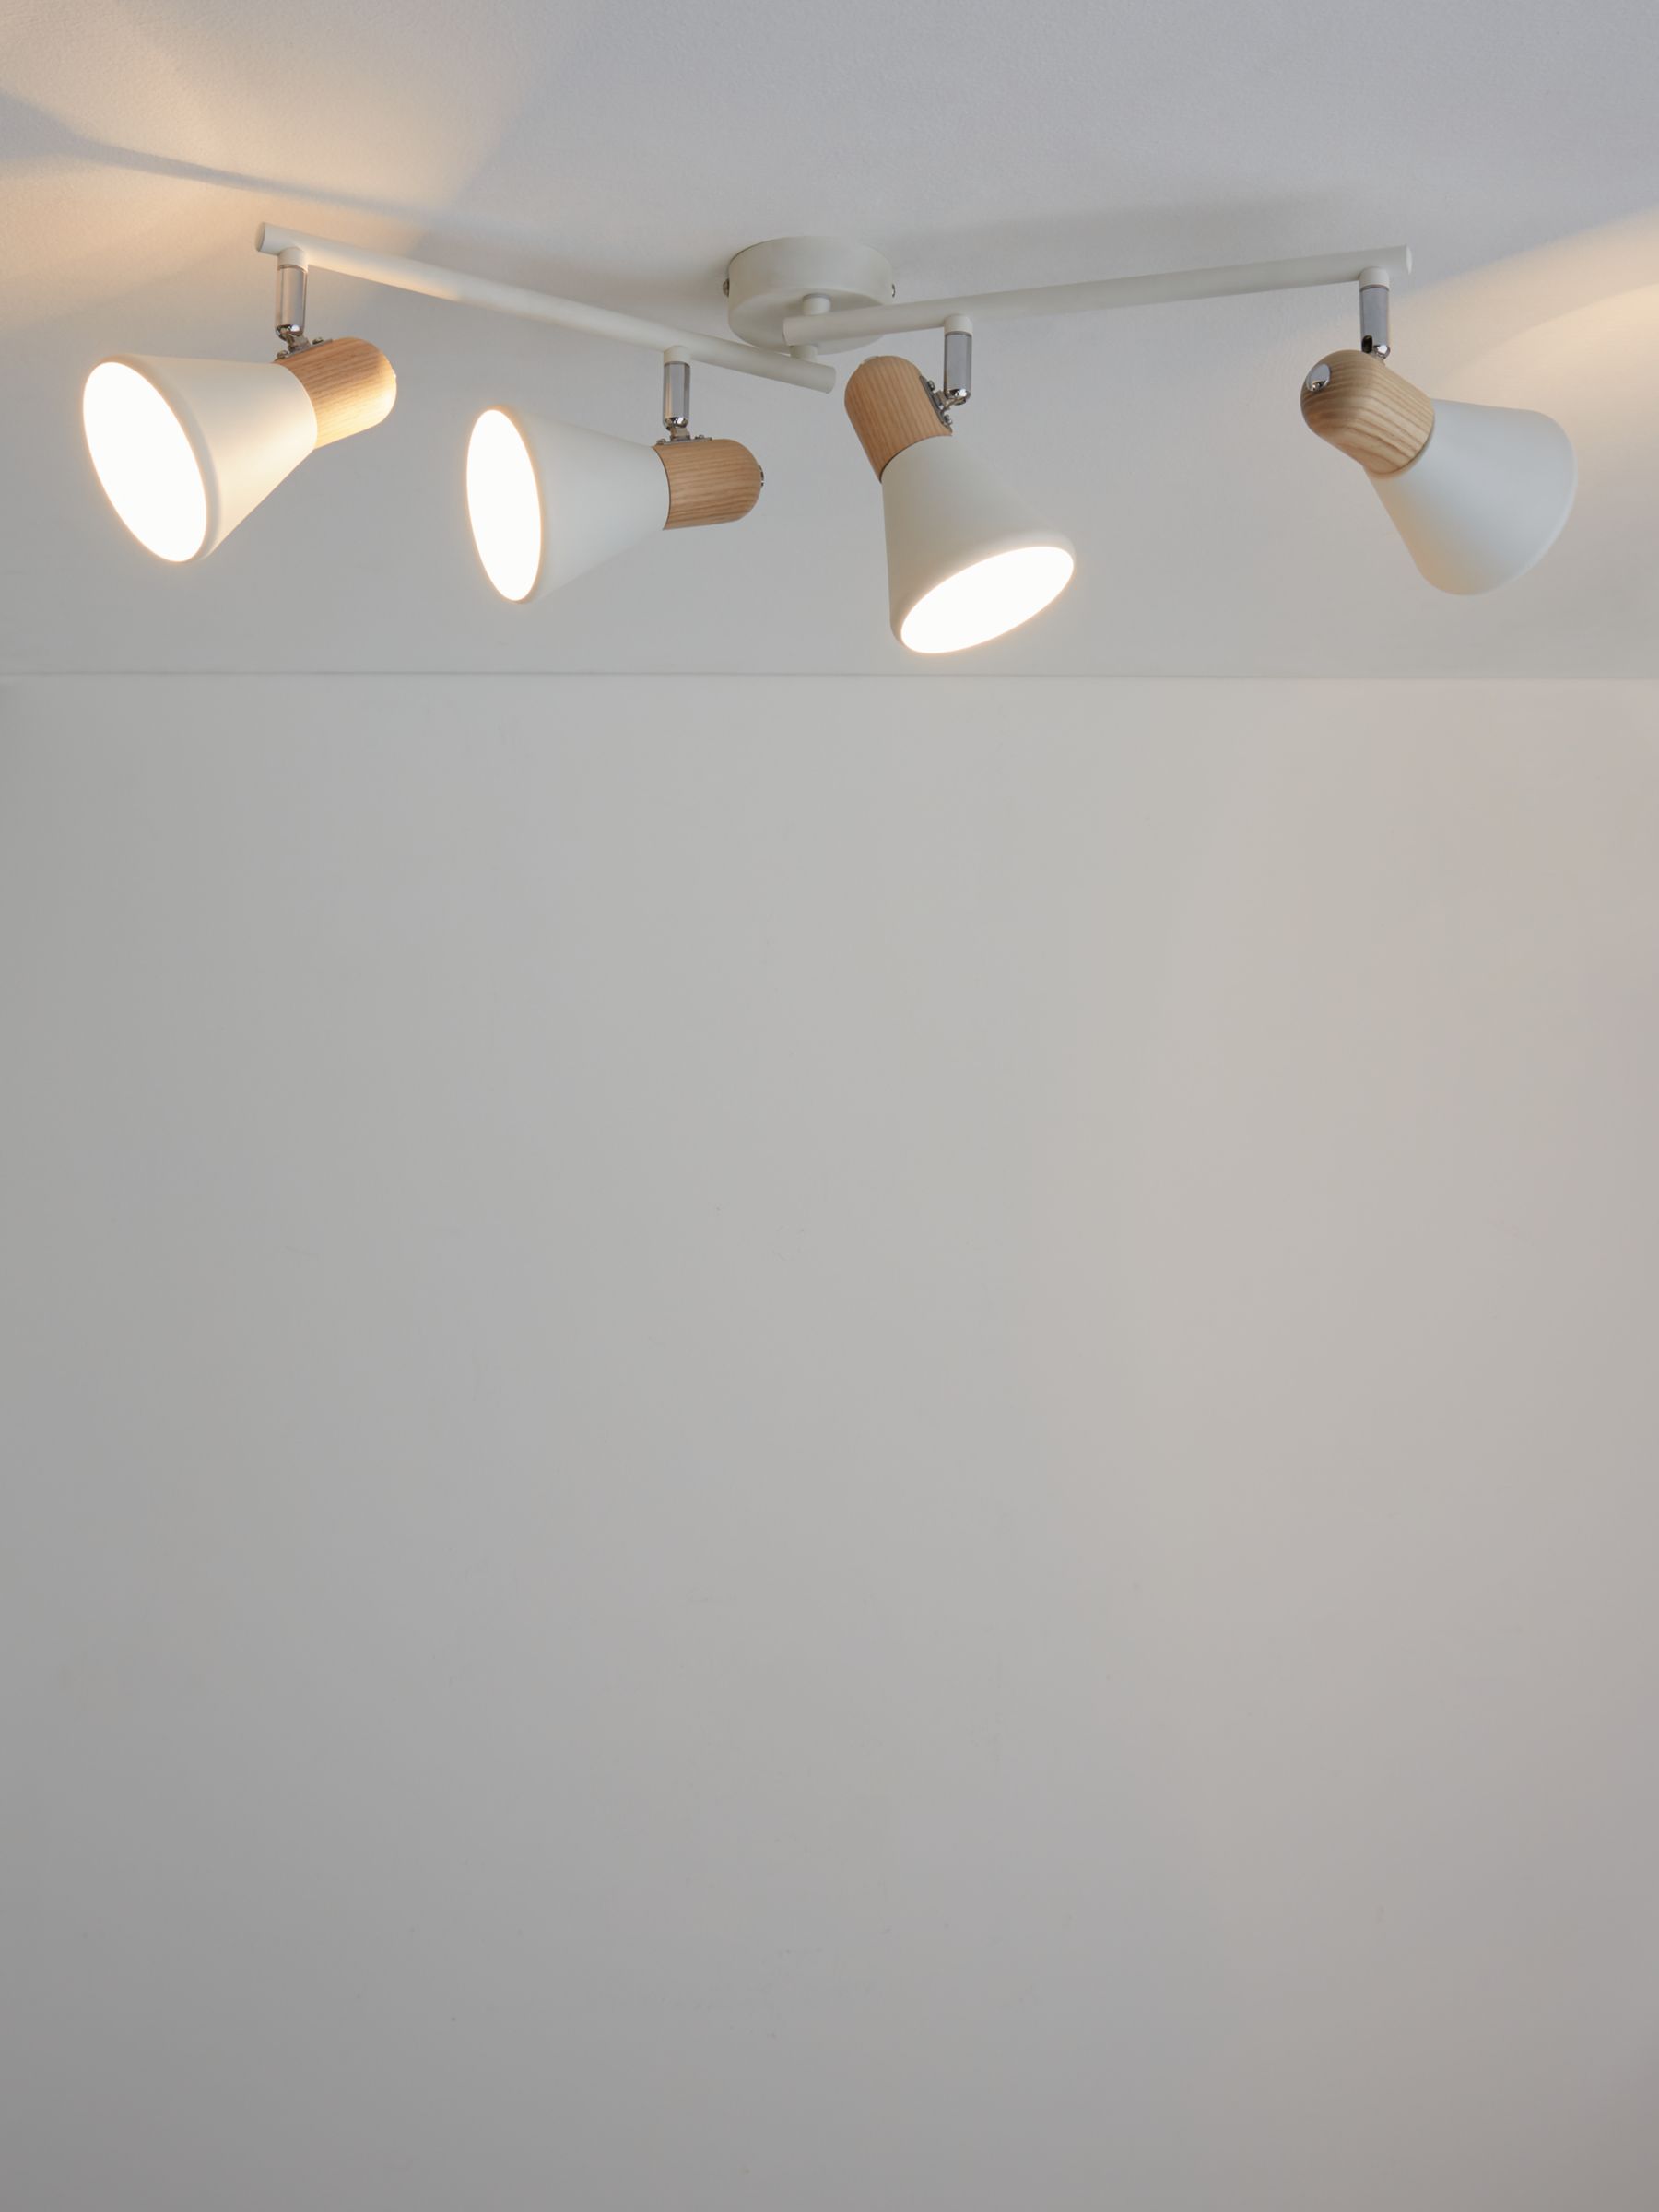 Photo of John lewis ses led 4 spotlight ceiling bar white/wood